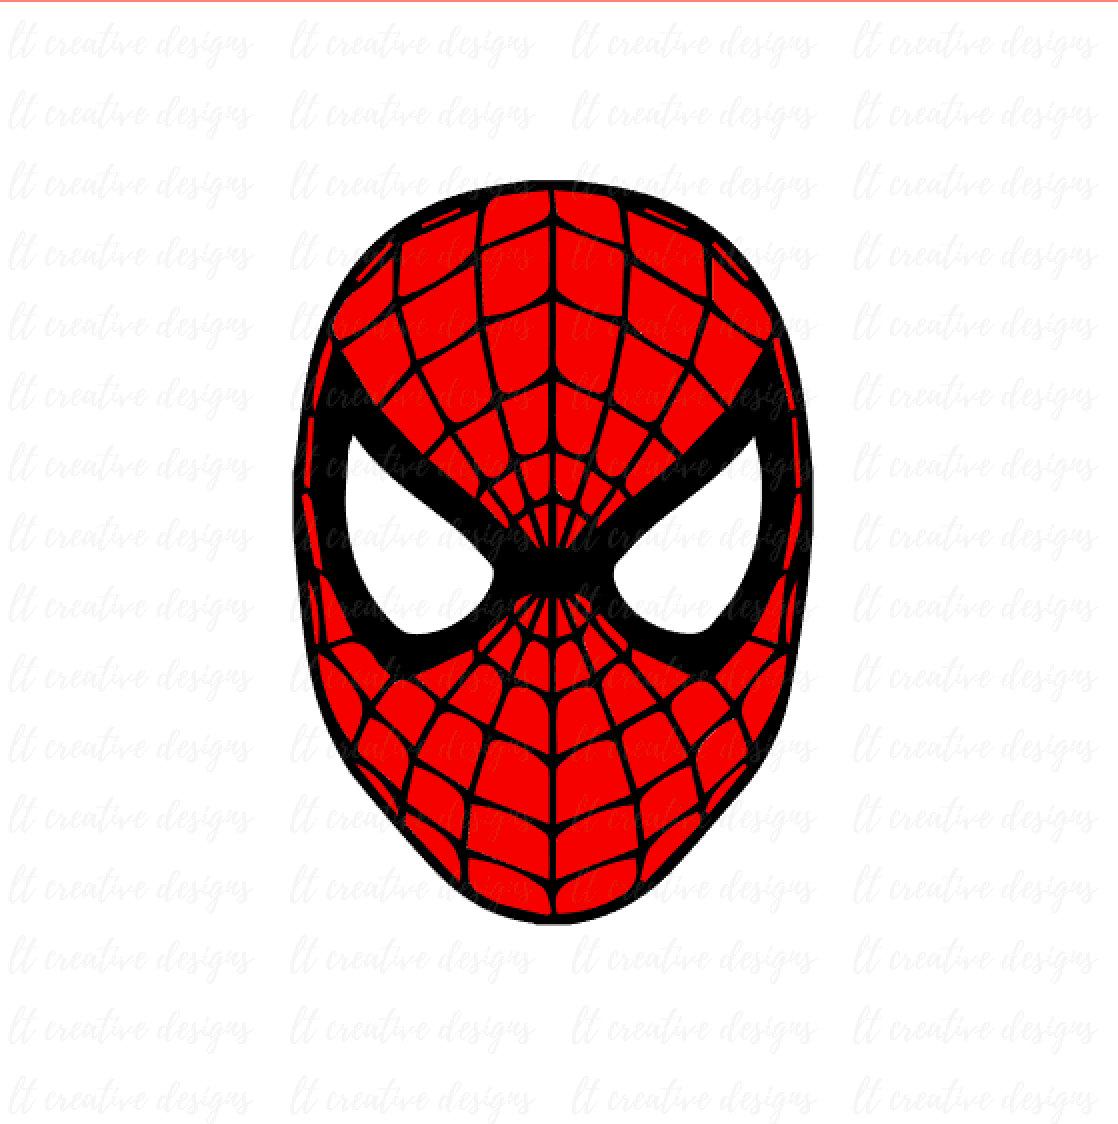 spiderman - Google Search